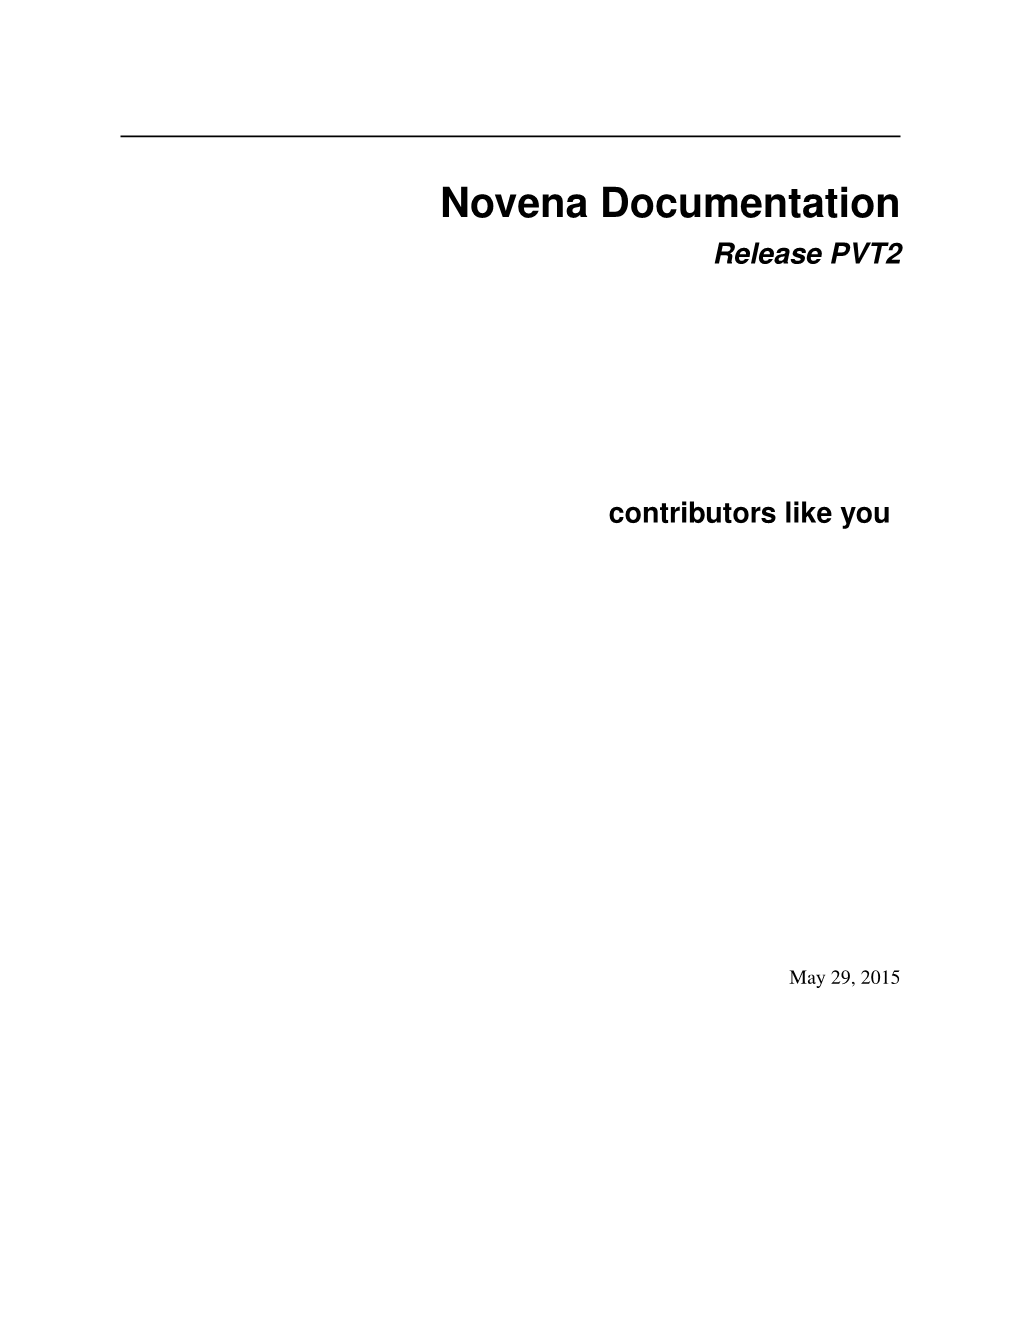 Novena Documentation Release PVT2